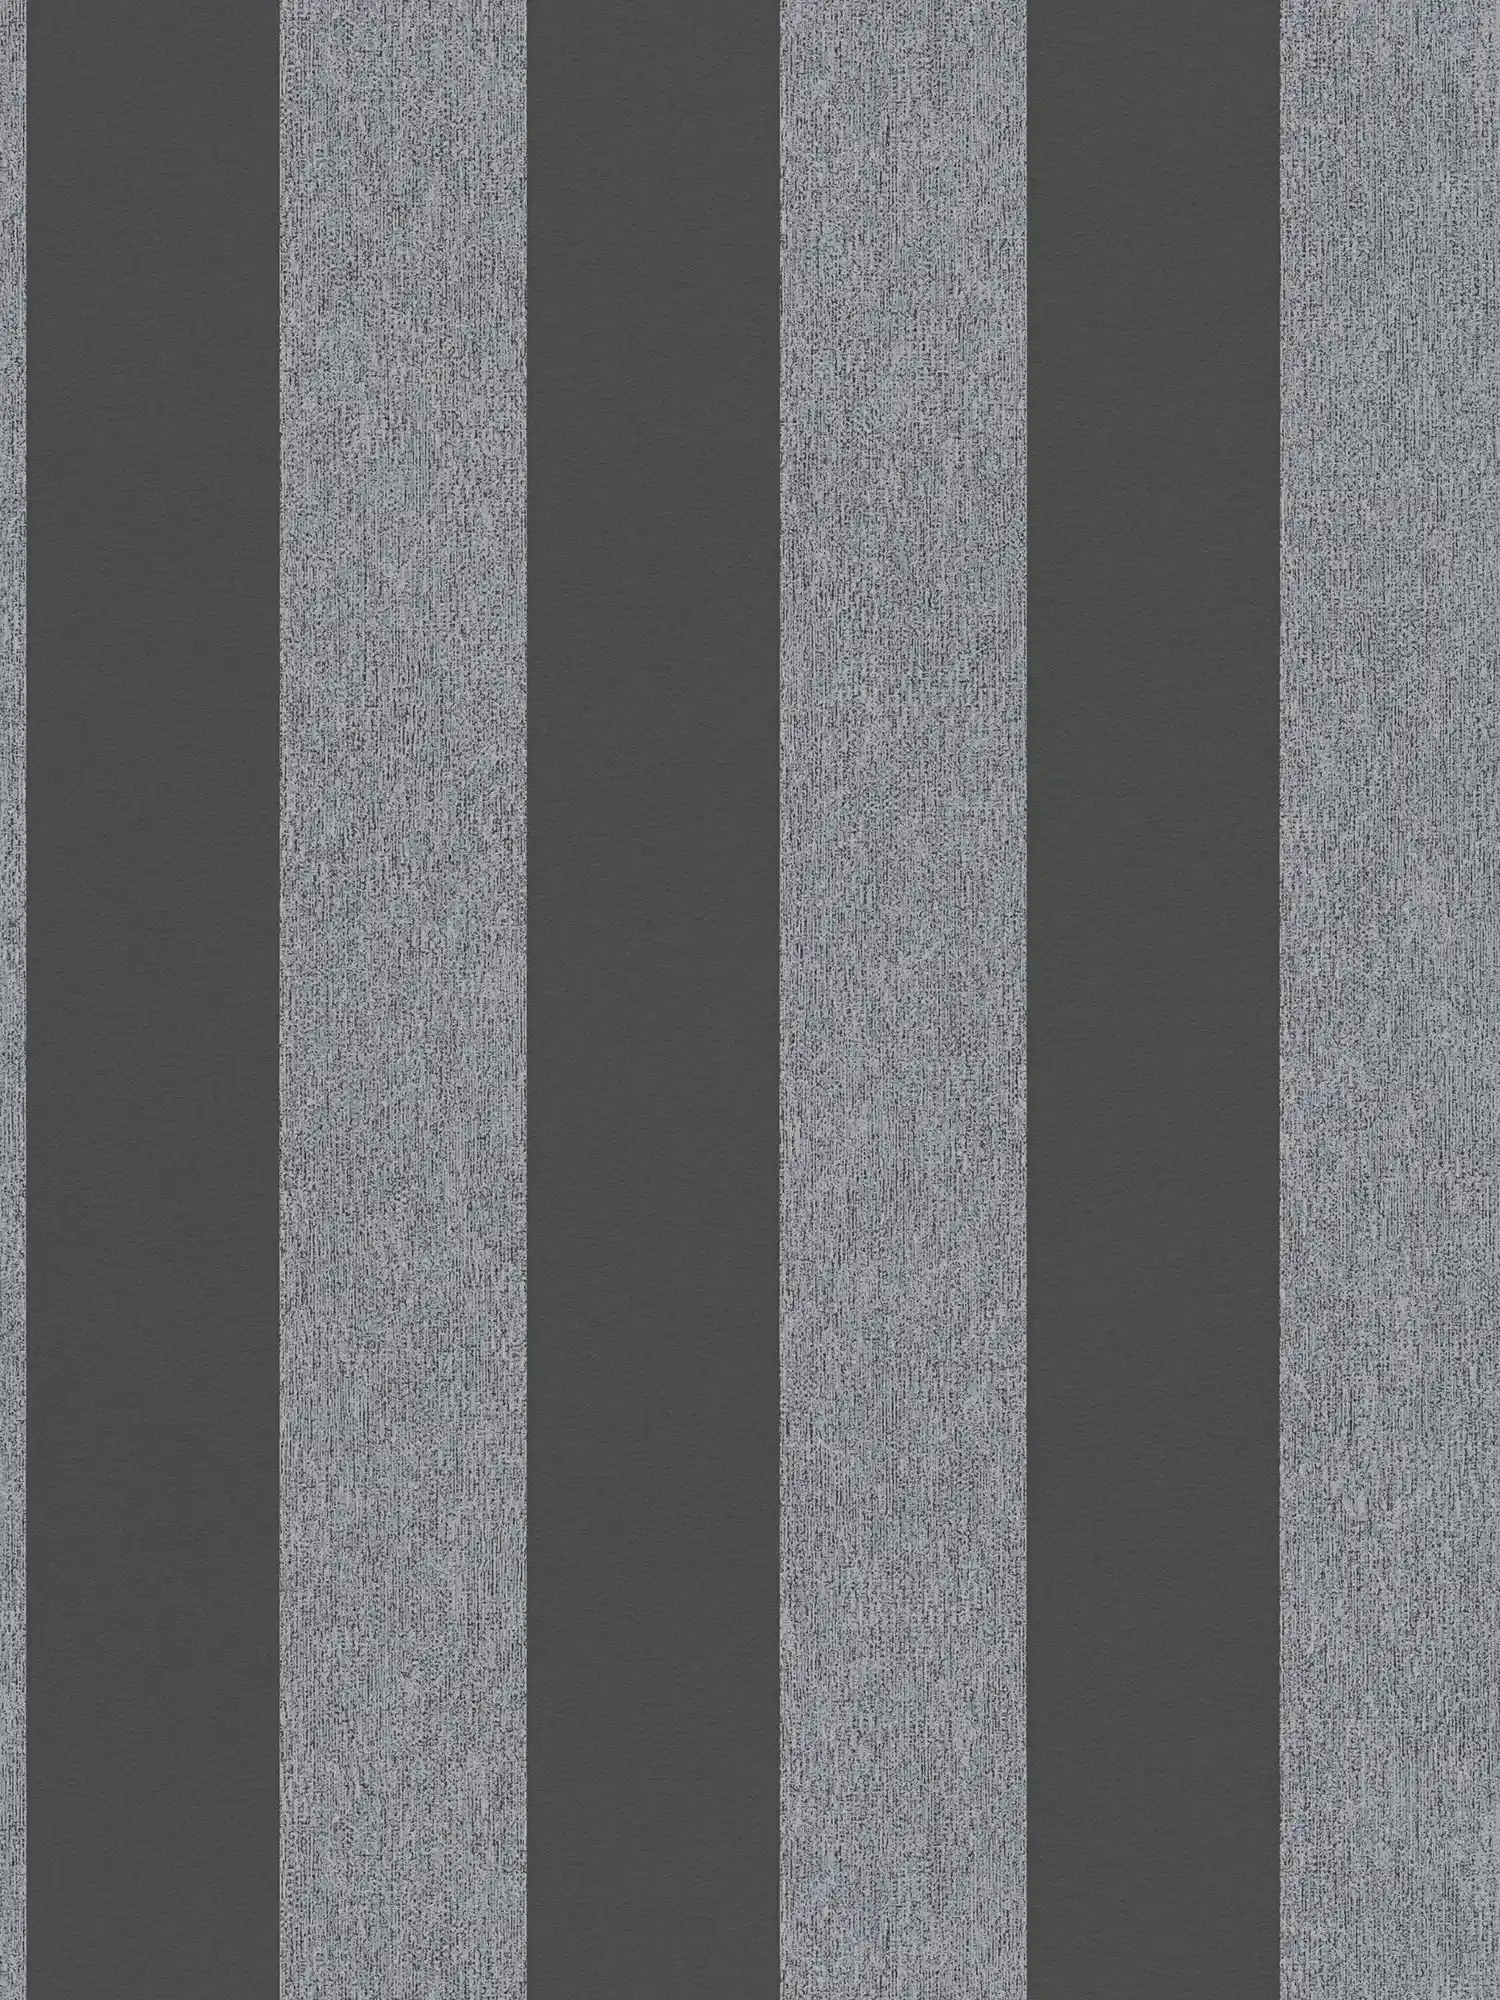         Carta da parati in tessuto non tessuto a strisce in look opaco - nero, grigio
    